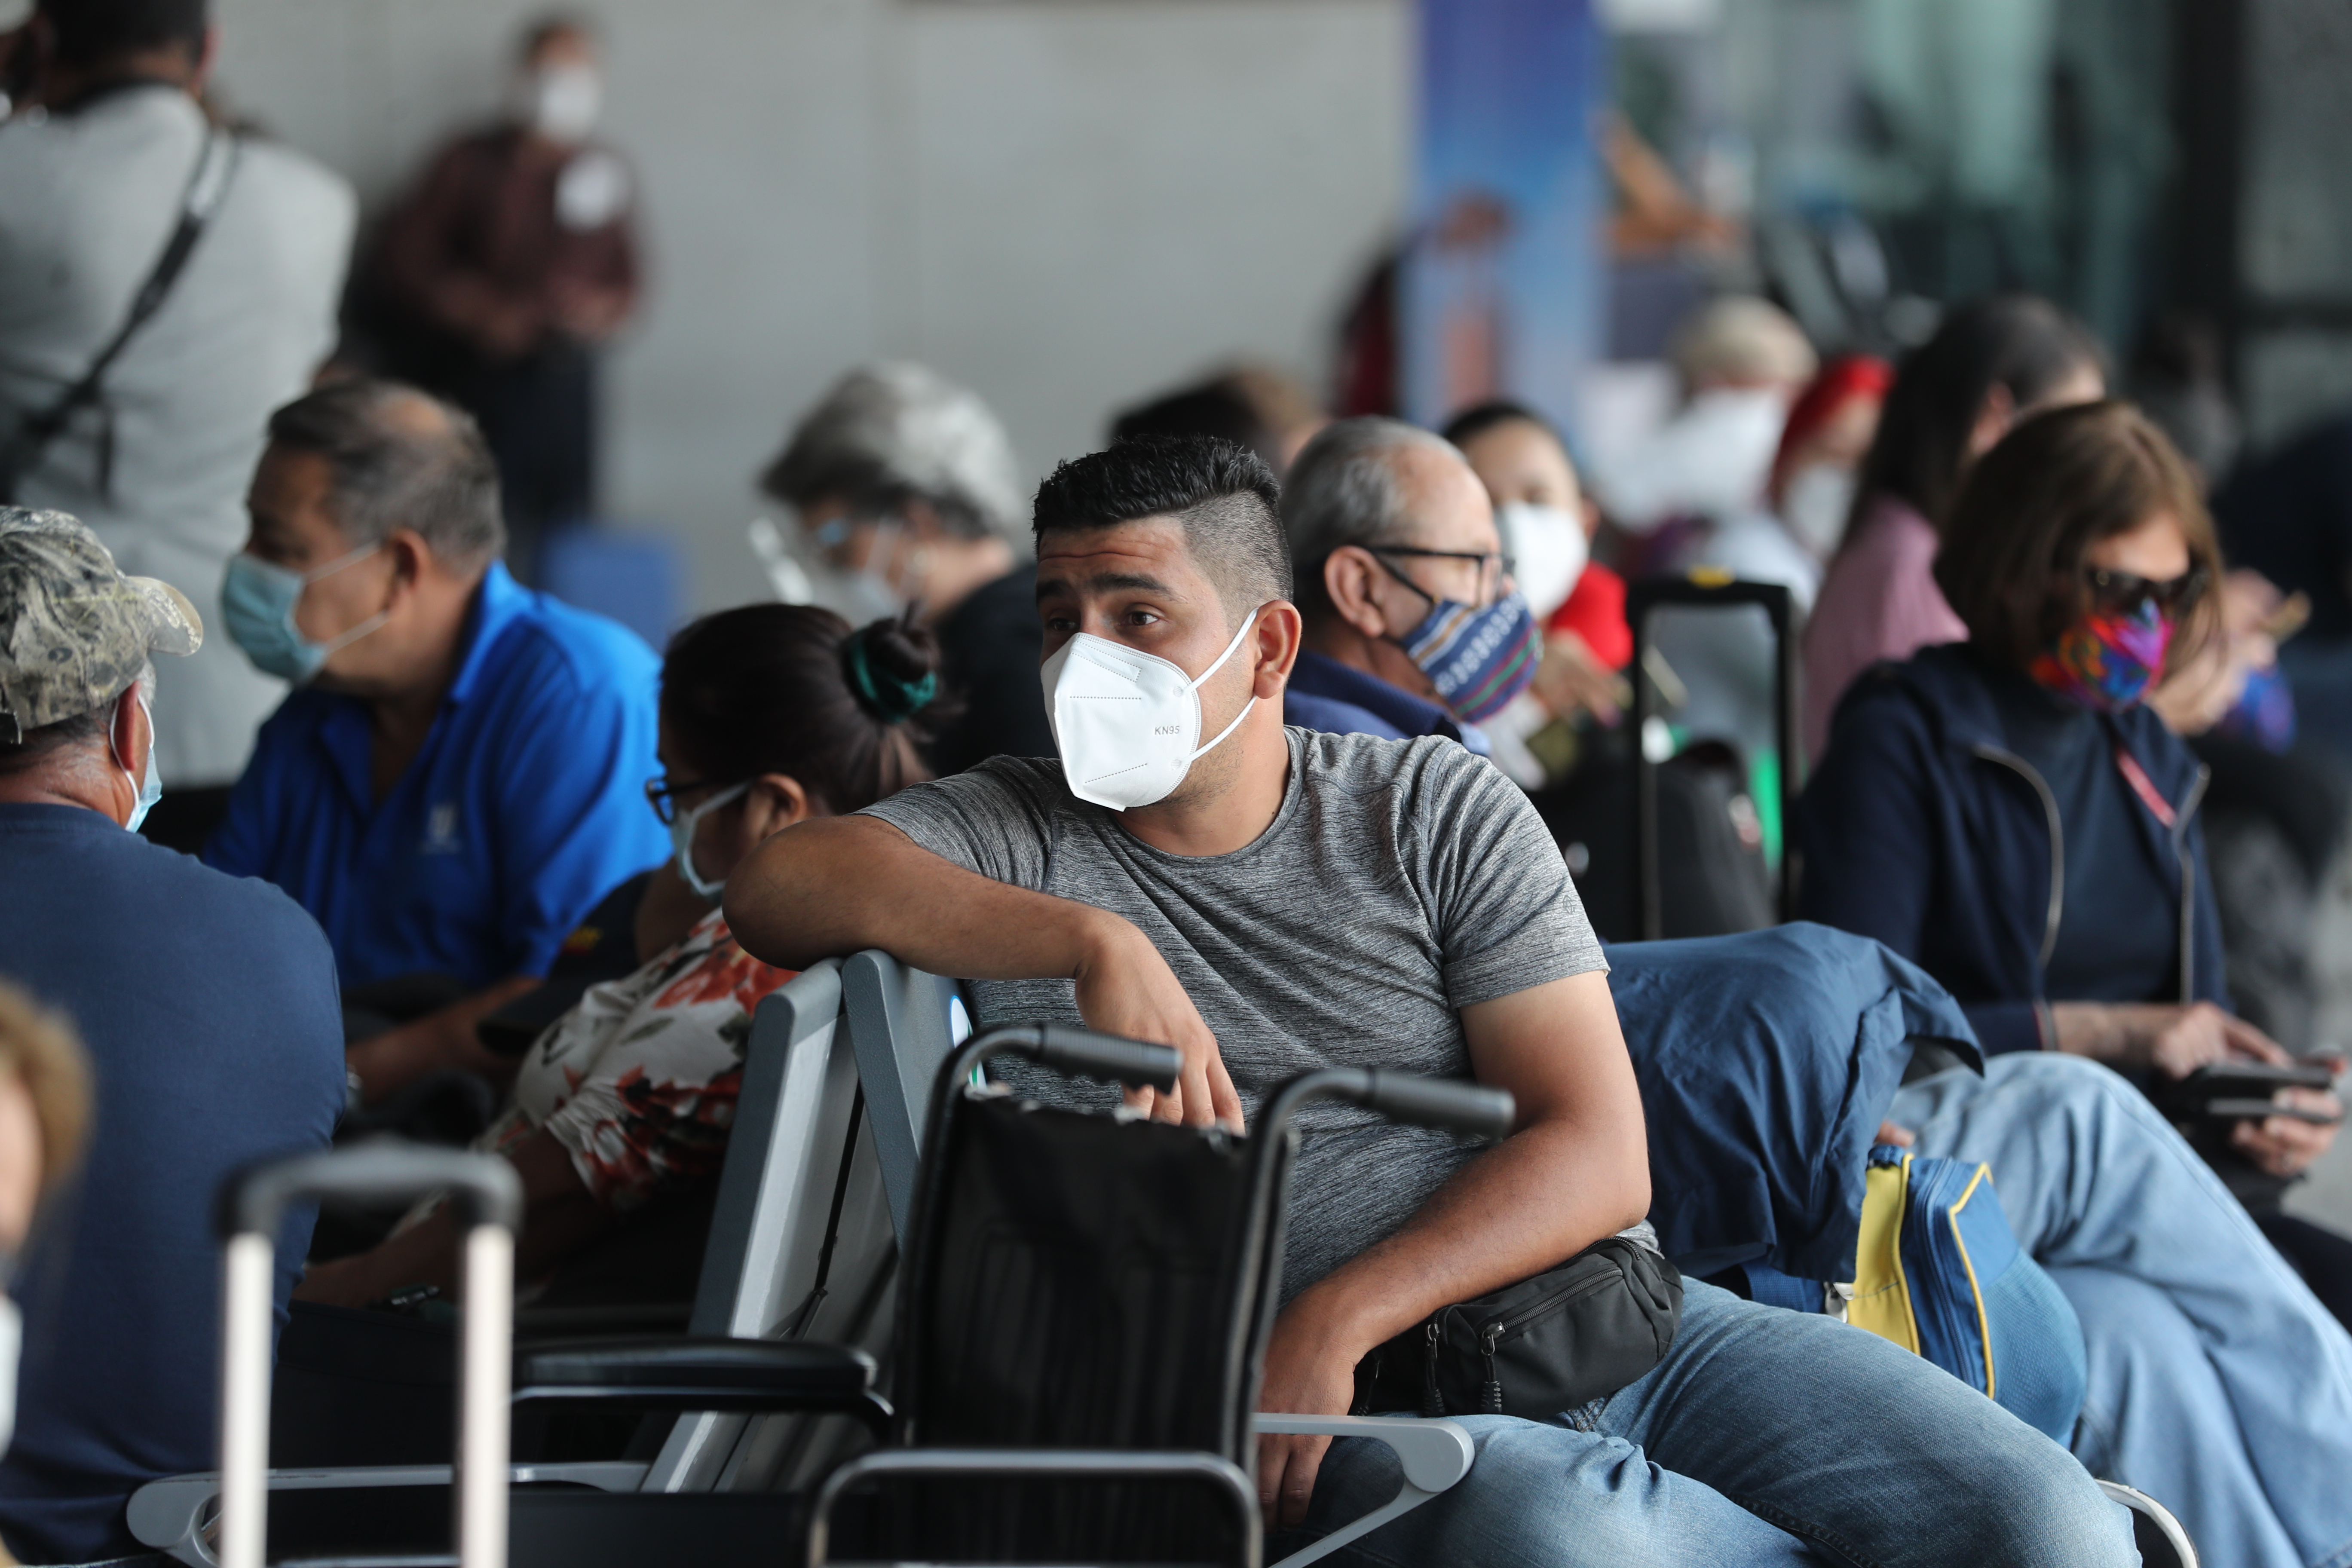 La Dirección General de Aeronáutica Civil y el Ministerio de Salud solicitaran la prueba PCR negativa a todos los pasajeros que arriben al país, se informó este sábado 19 de septiembre. (Foto Prensa Libre: Érick Ávila)  